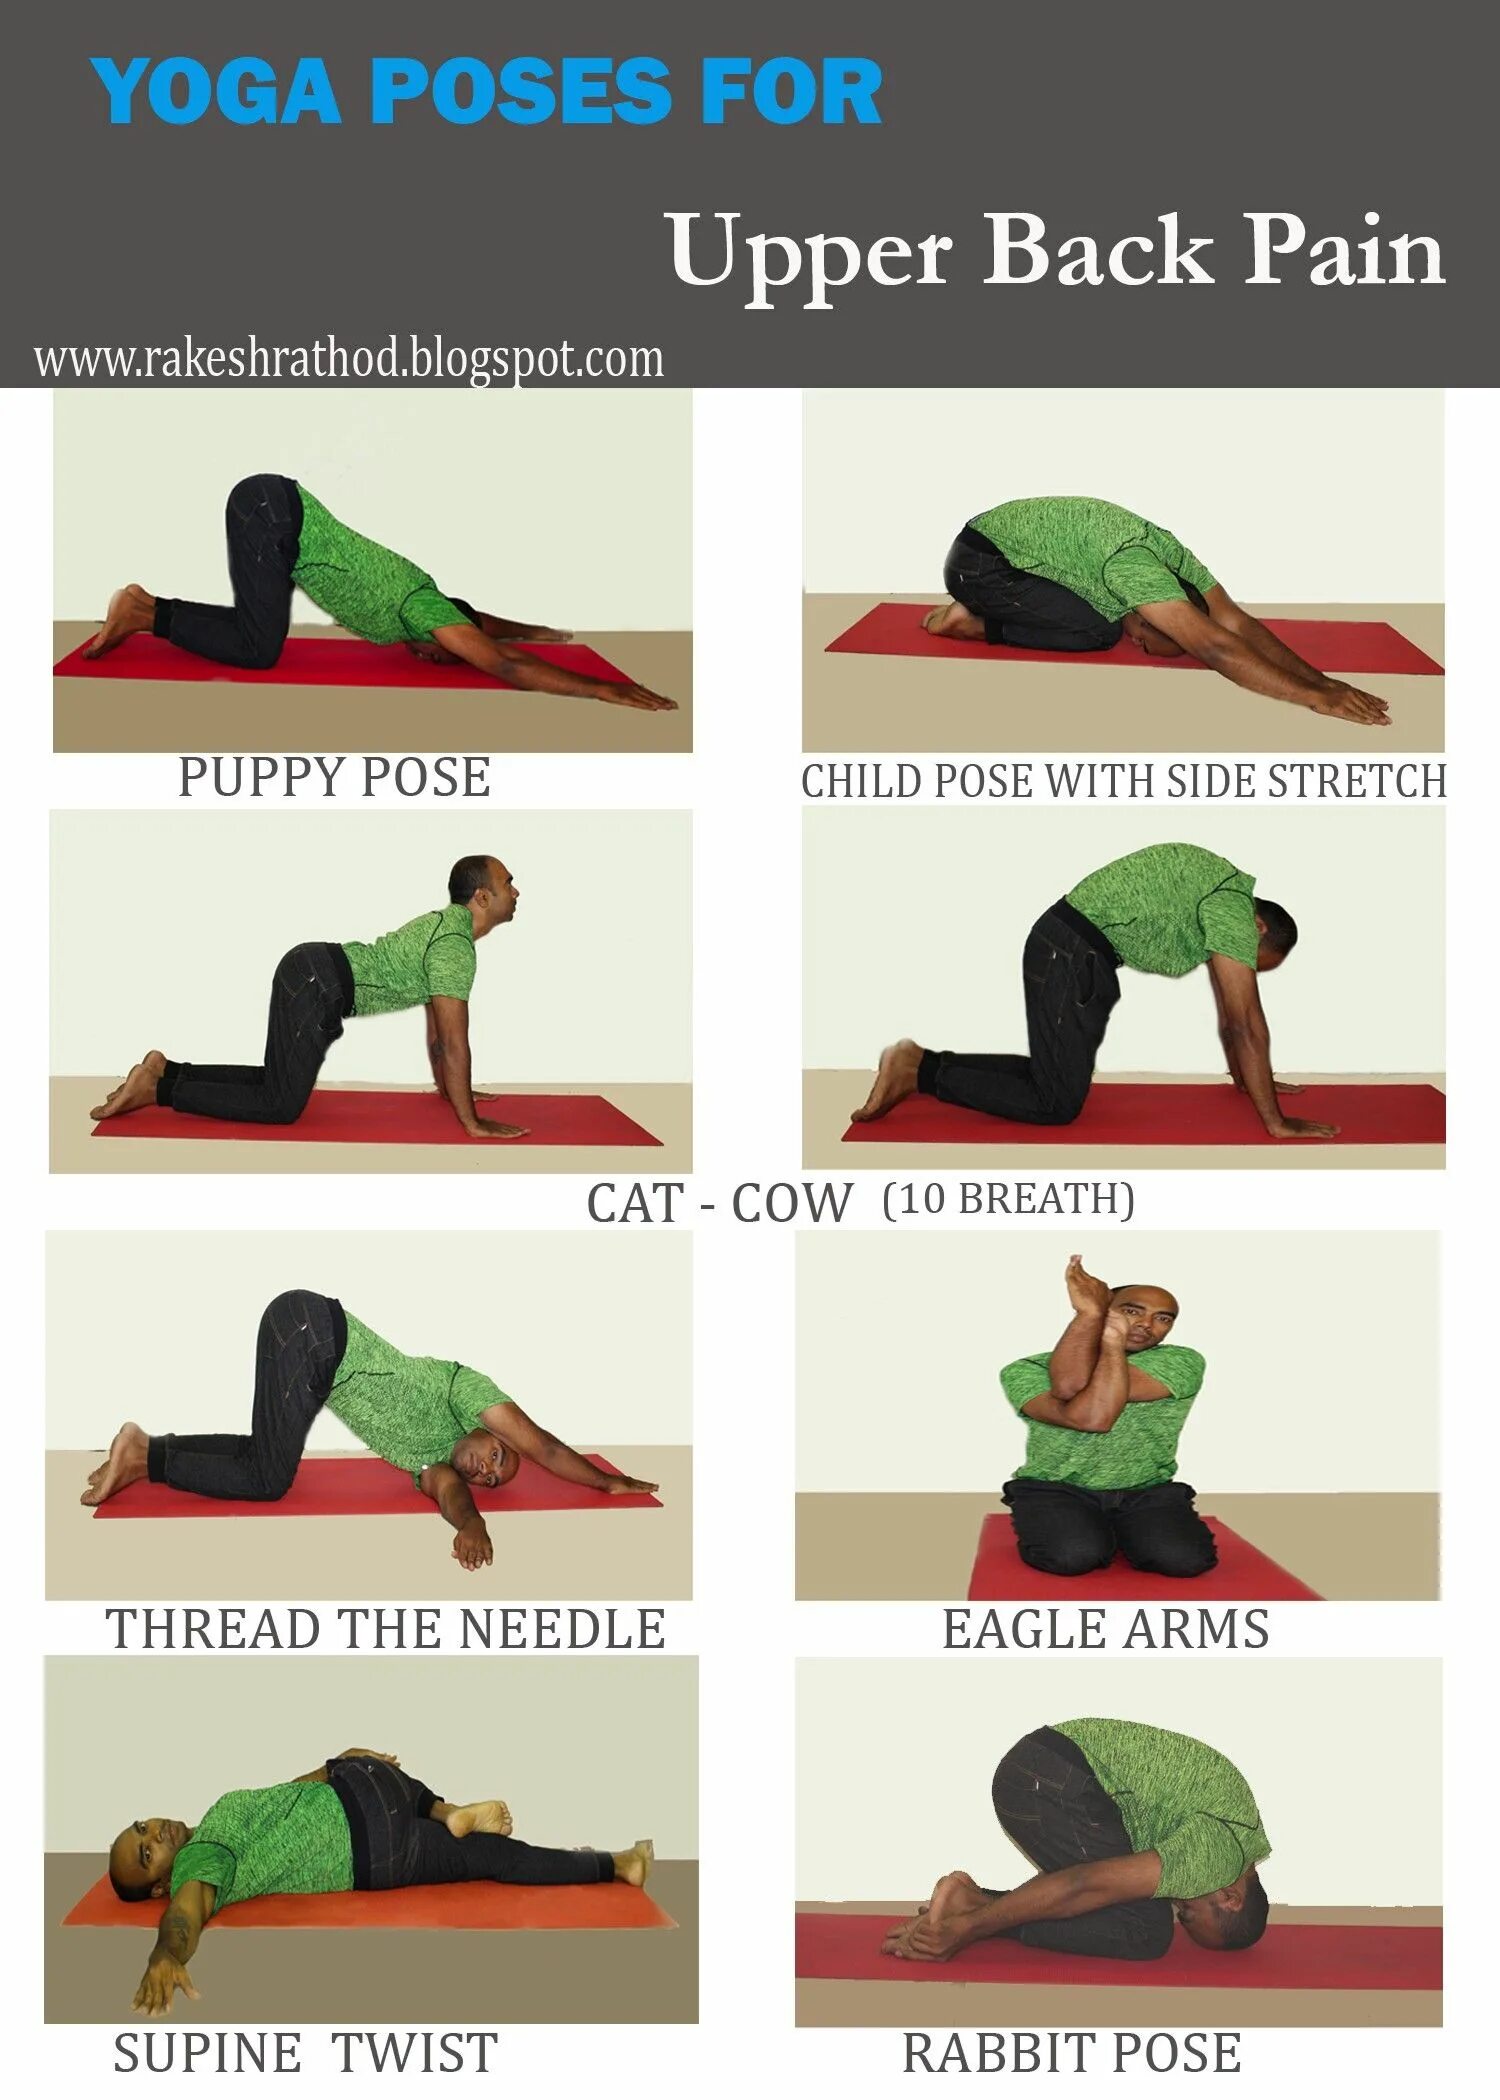 Stretching back. Упражнения для растяжки позвоночника. Йога в упражнениях. Упражнения на растяжку позвоночника в йоге.